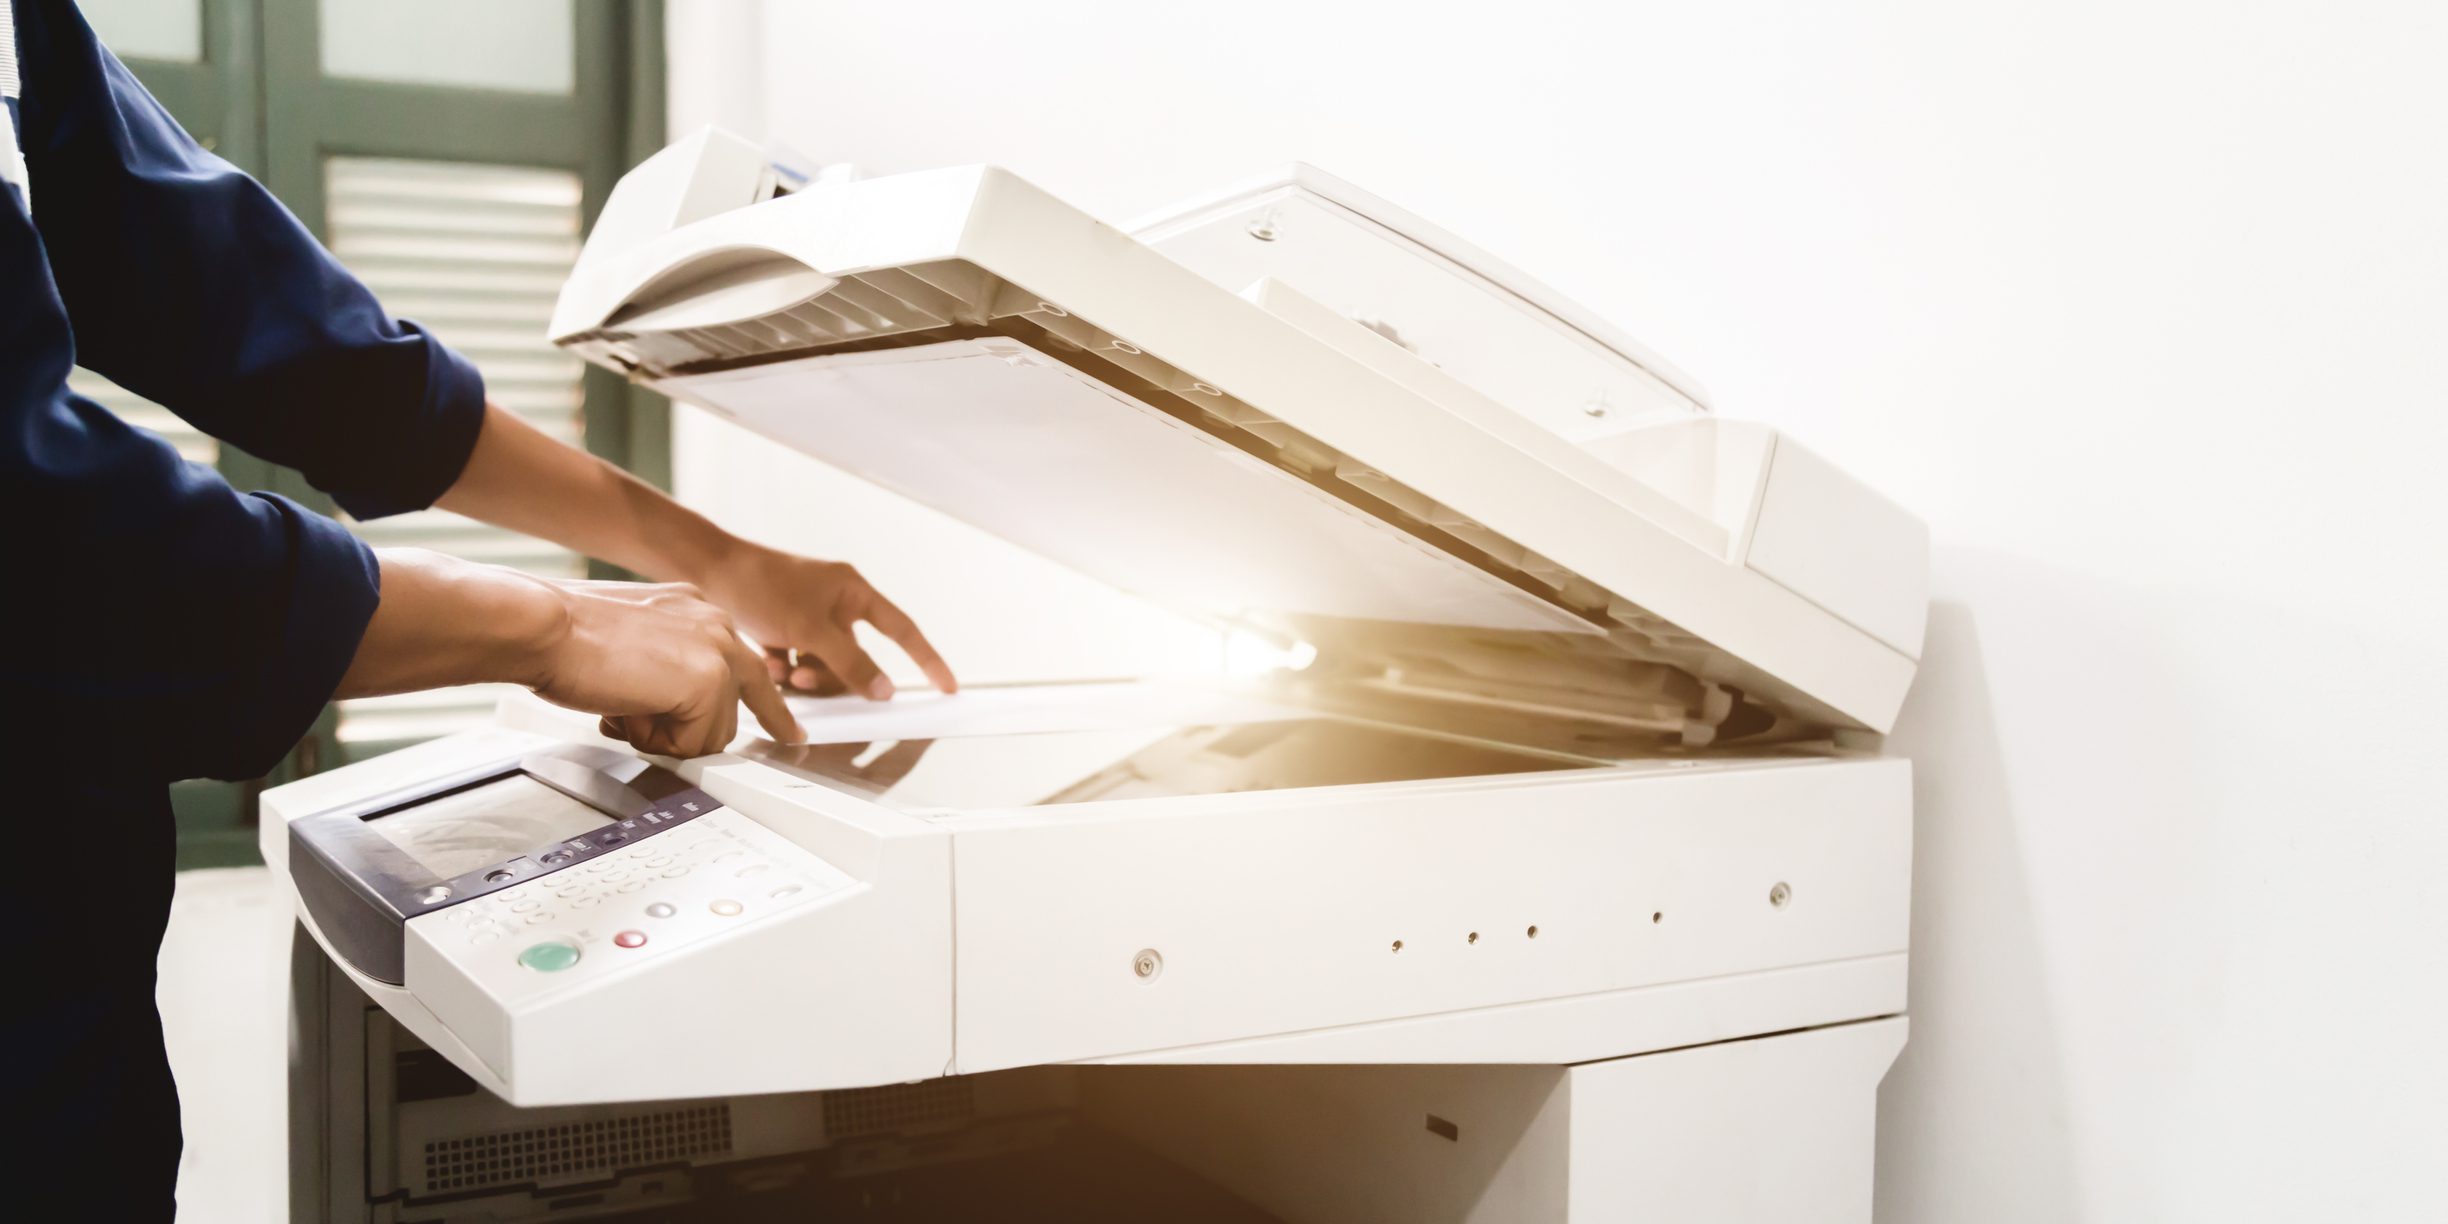 Bir kişinin elleri kullanılarak gösterilen bir fotokopi makinesinin fotoğrafı